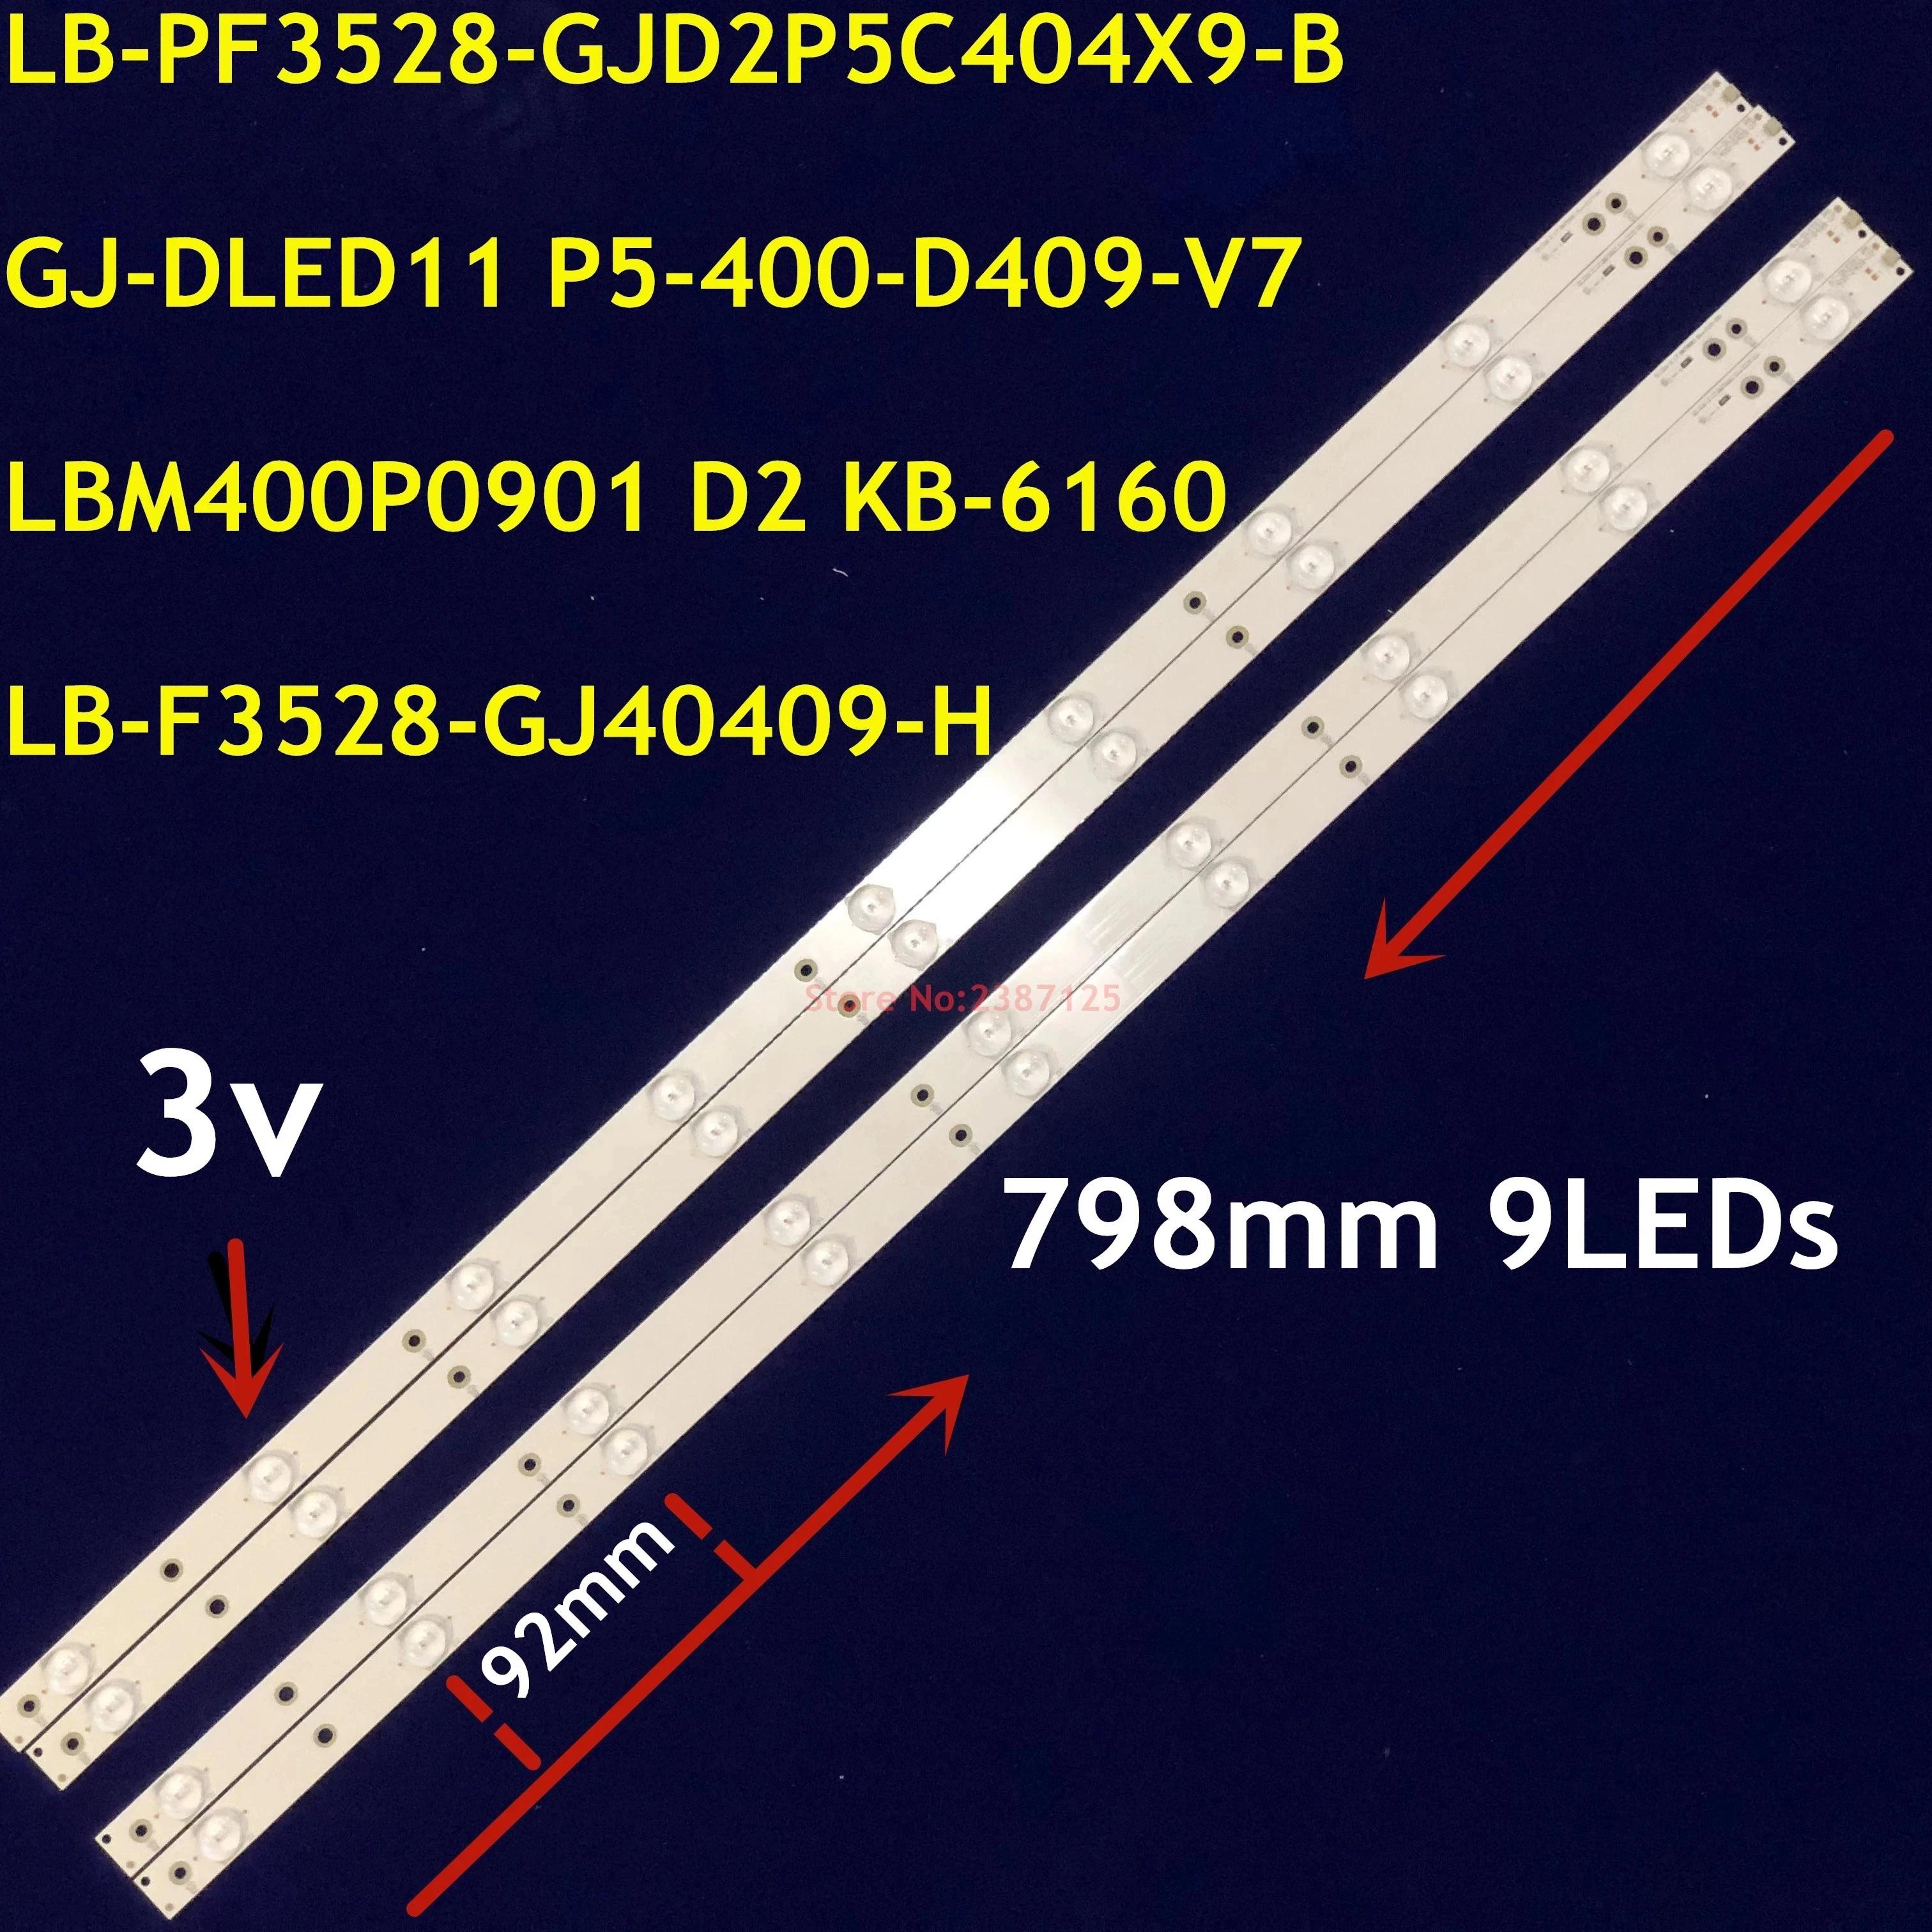 

LED backlight GJ-DLEDII P5-400-D409-V7 for LED TV P h ilips 40PFT5300/12 40PFT5300/60 40PFK4509/12 40PFH5300/88